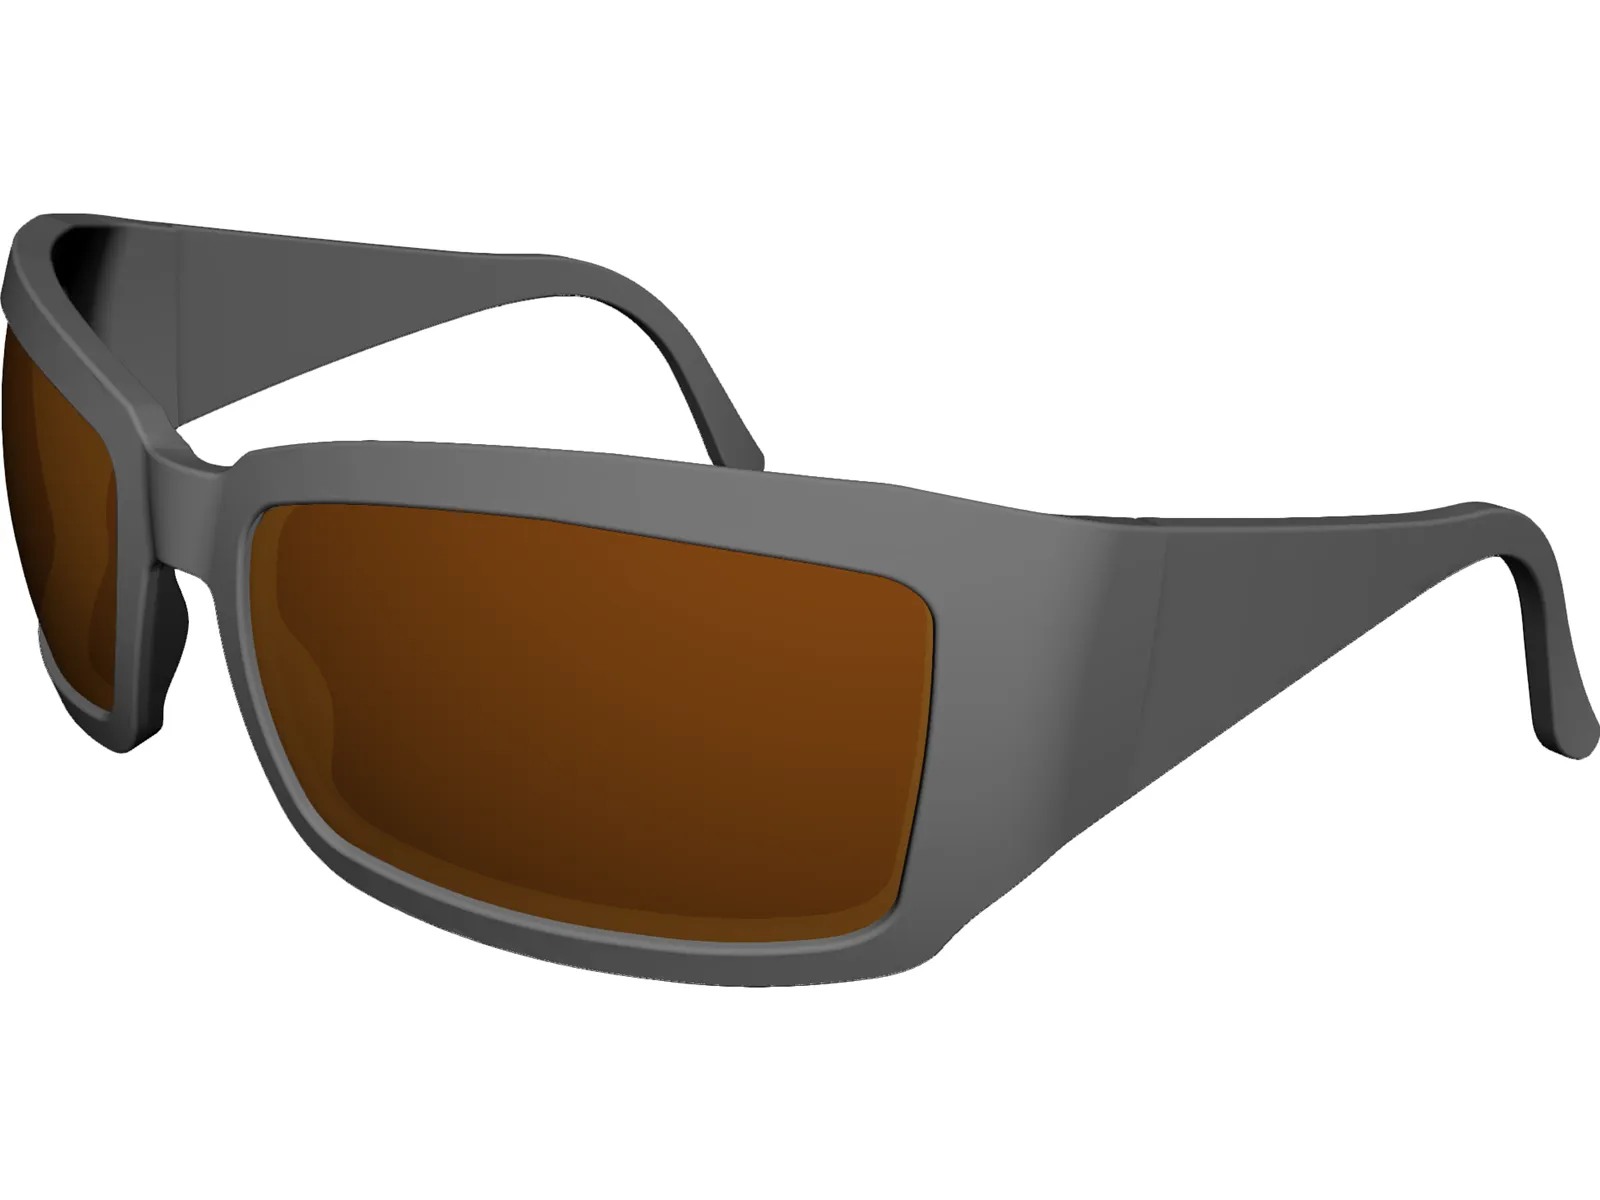 Sunglasses Plastic 3D Model